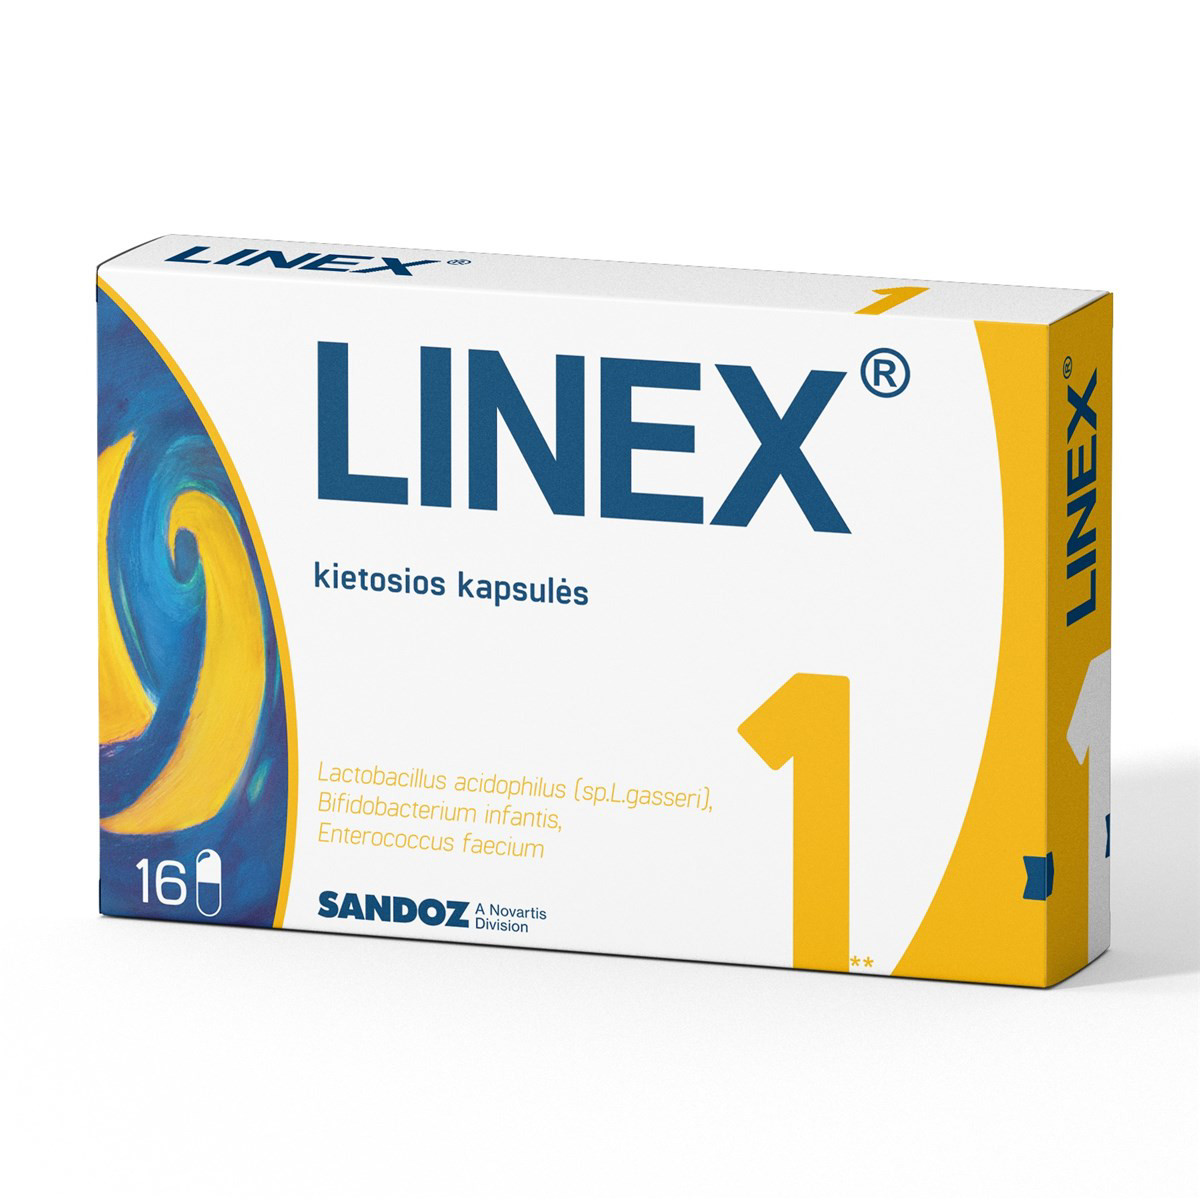 LINEX, kietosios kapsulės, N16